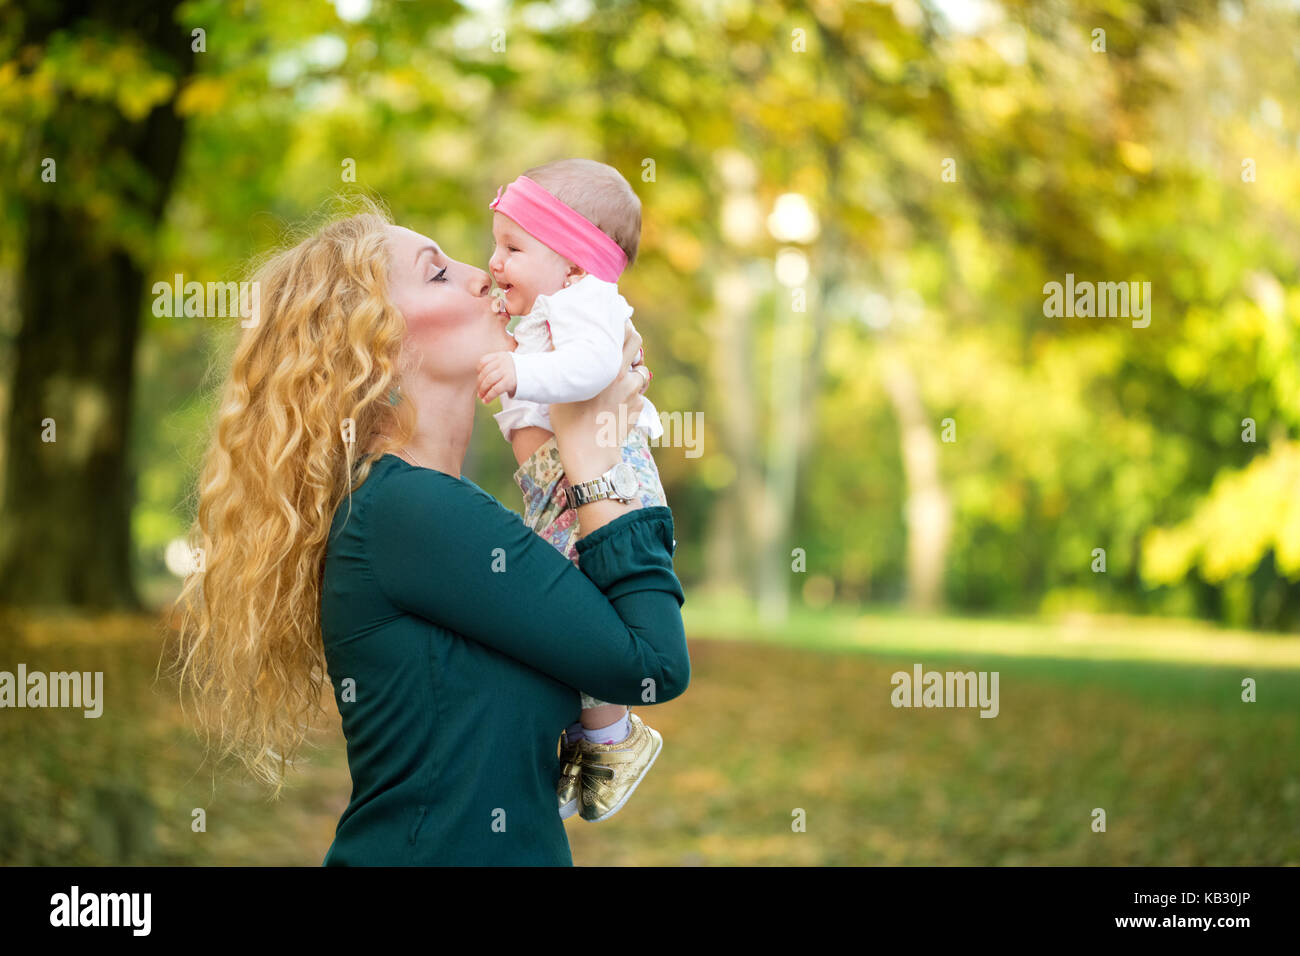 Felice famiglia allegra, il bambino e la madre baciare in natura outdoor Foto Stock